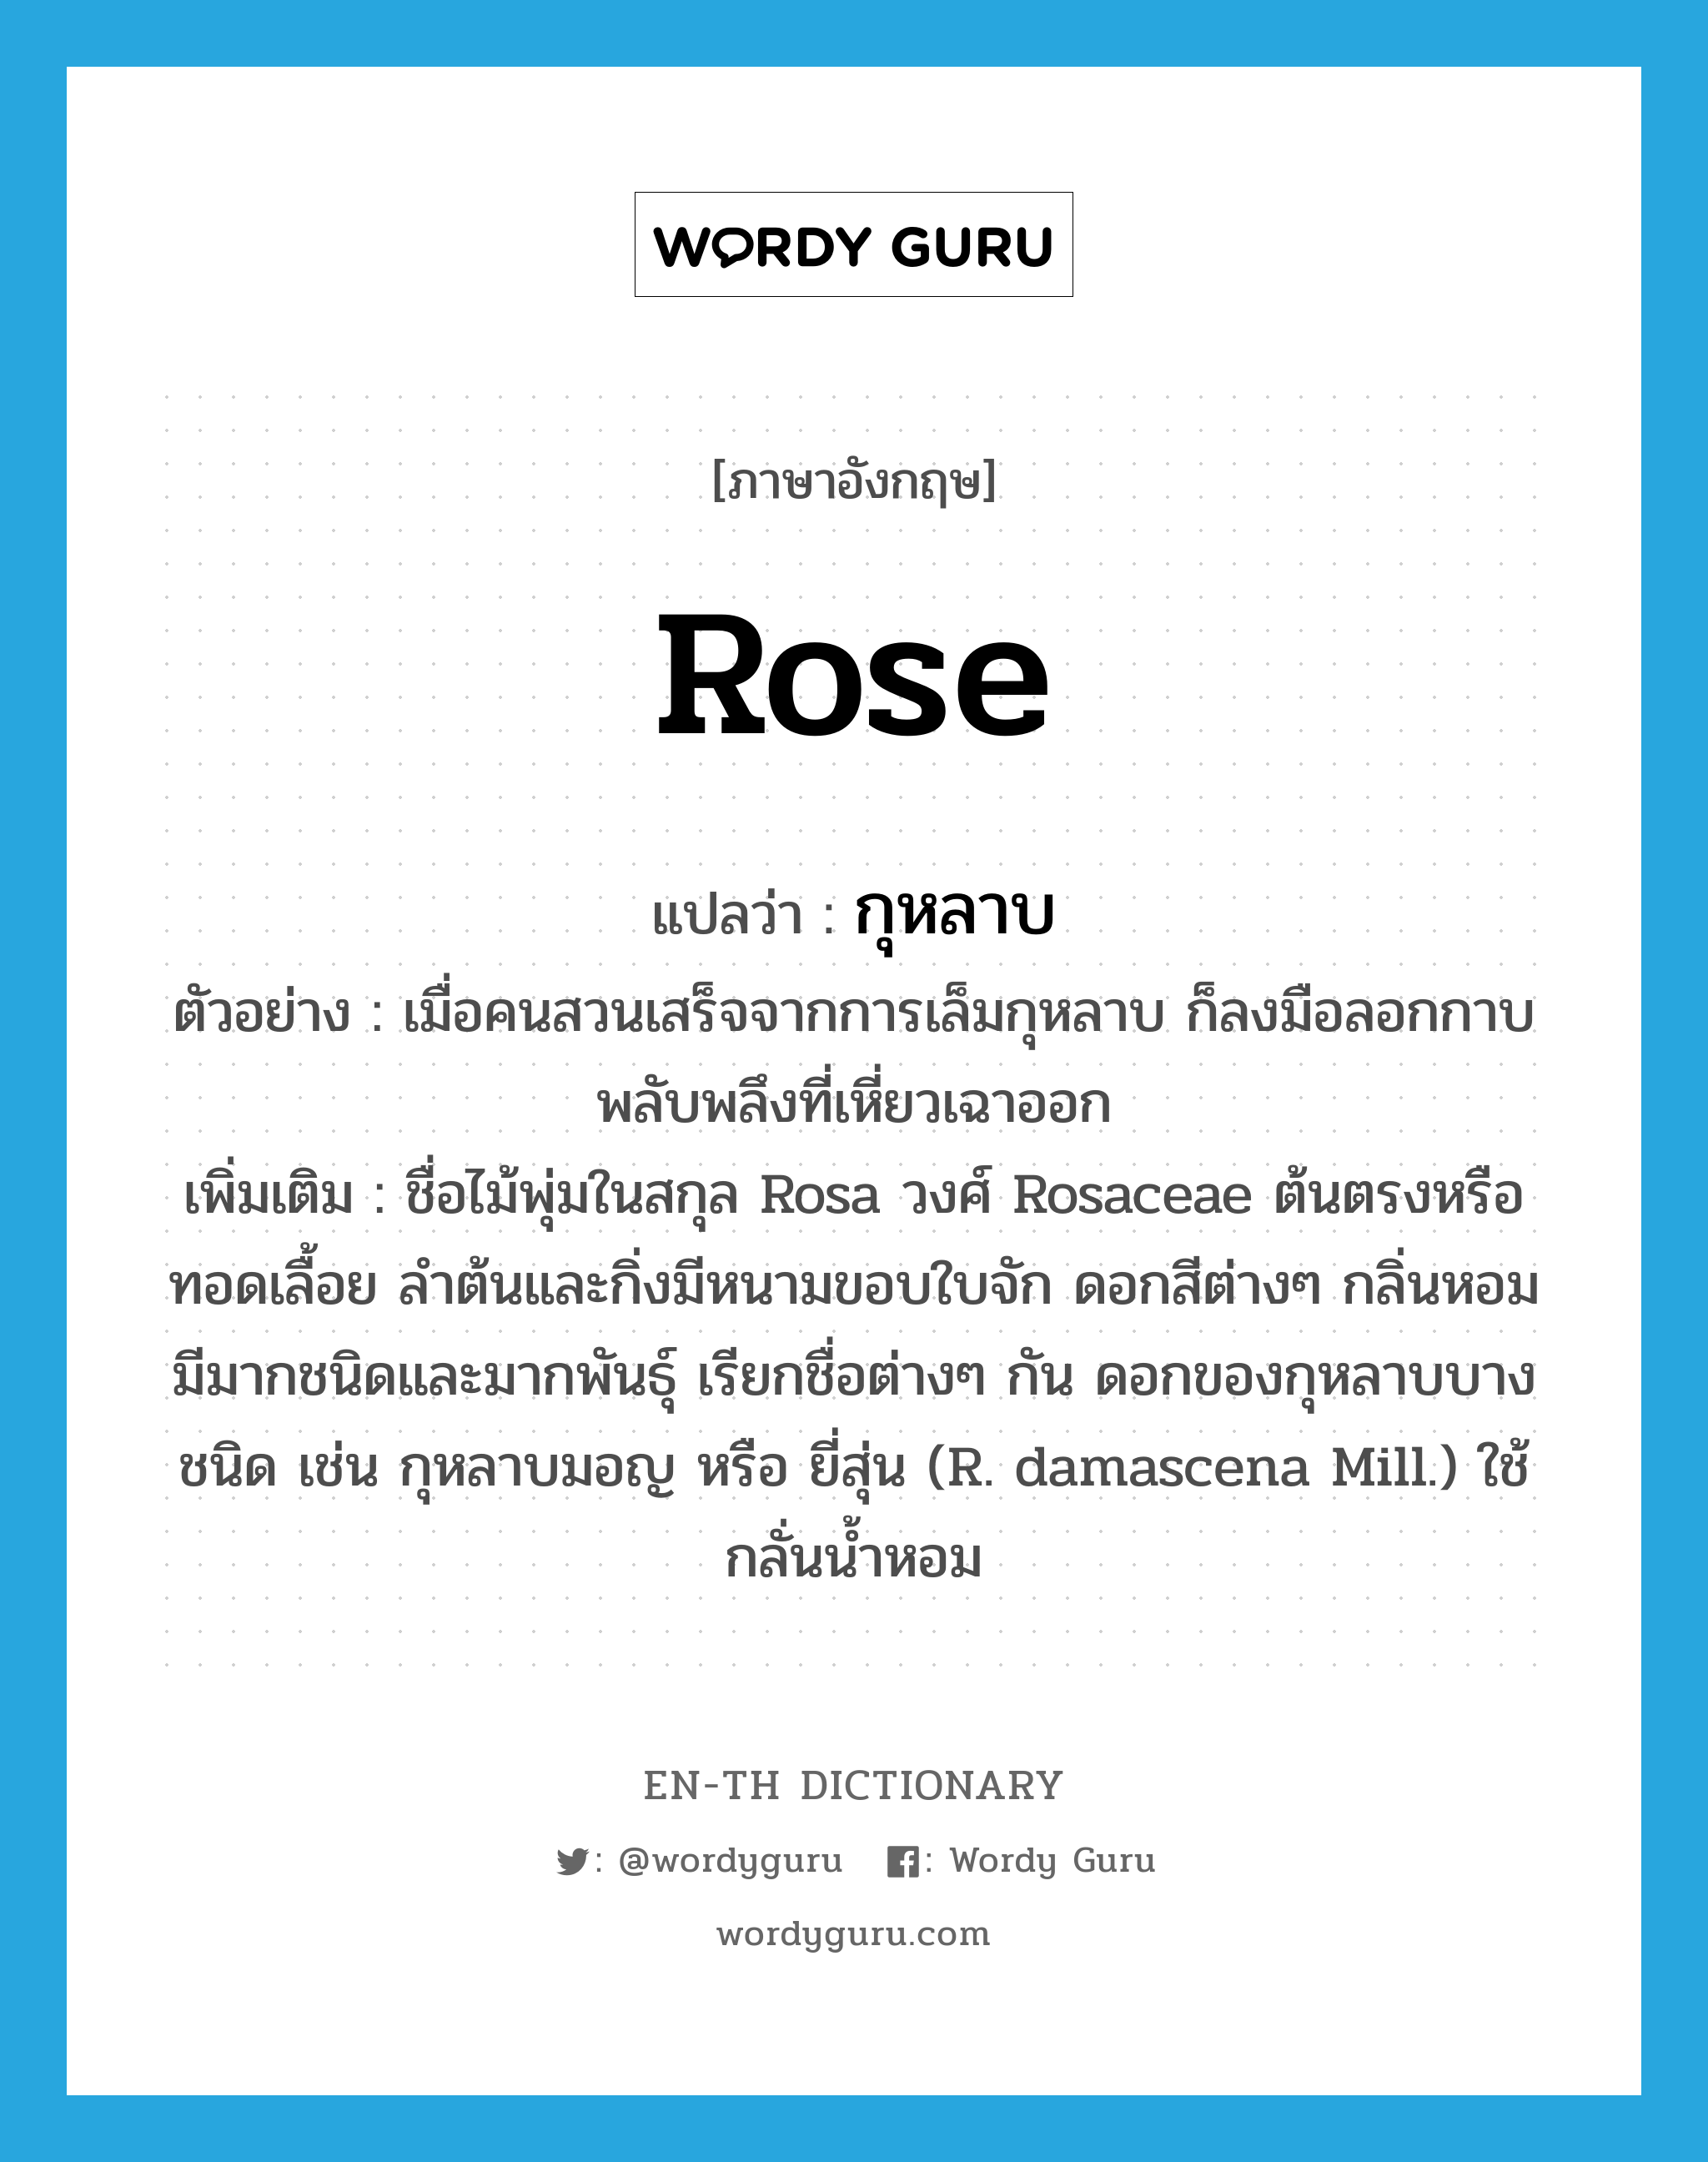 rose แปลว่า?, คำศัพท์ภาษาอังกฤษ rose แปลว่า กุหลาบ ประเภท N ตัวอย่าง เมื่อคนสวนเสร็จจากการเล็มกุหลาบ ก็ลงมือลอกกาบพลับพลึงที่เหี่ยวเฉาออก เพิ่มเติม ชื่อไม้พุ่มในสกุล Rosa วงศ์ Rosaceae ต้นตรงหรือทอดเลื้อย ลำต้นและกิ่งมีหนามขอบใบจัก ดอกสีต่างๆ กลิ่นหอม มีมากชนิดและมากพันธุ์ เรียกชื่อต่างๆ กัน ดอกของกุหลาบบางชนิด เช่น กุหลาบมอญ หรือ ยี่สุ่น (R. damascena Mill.) ใช้กลั่นน้ำหอม หมวด N